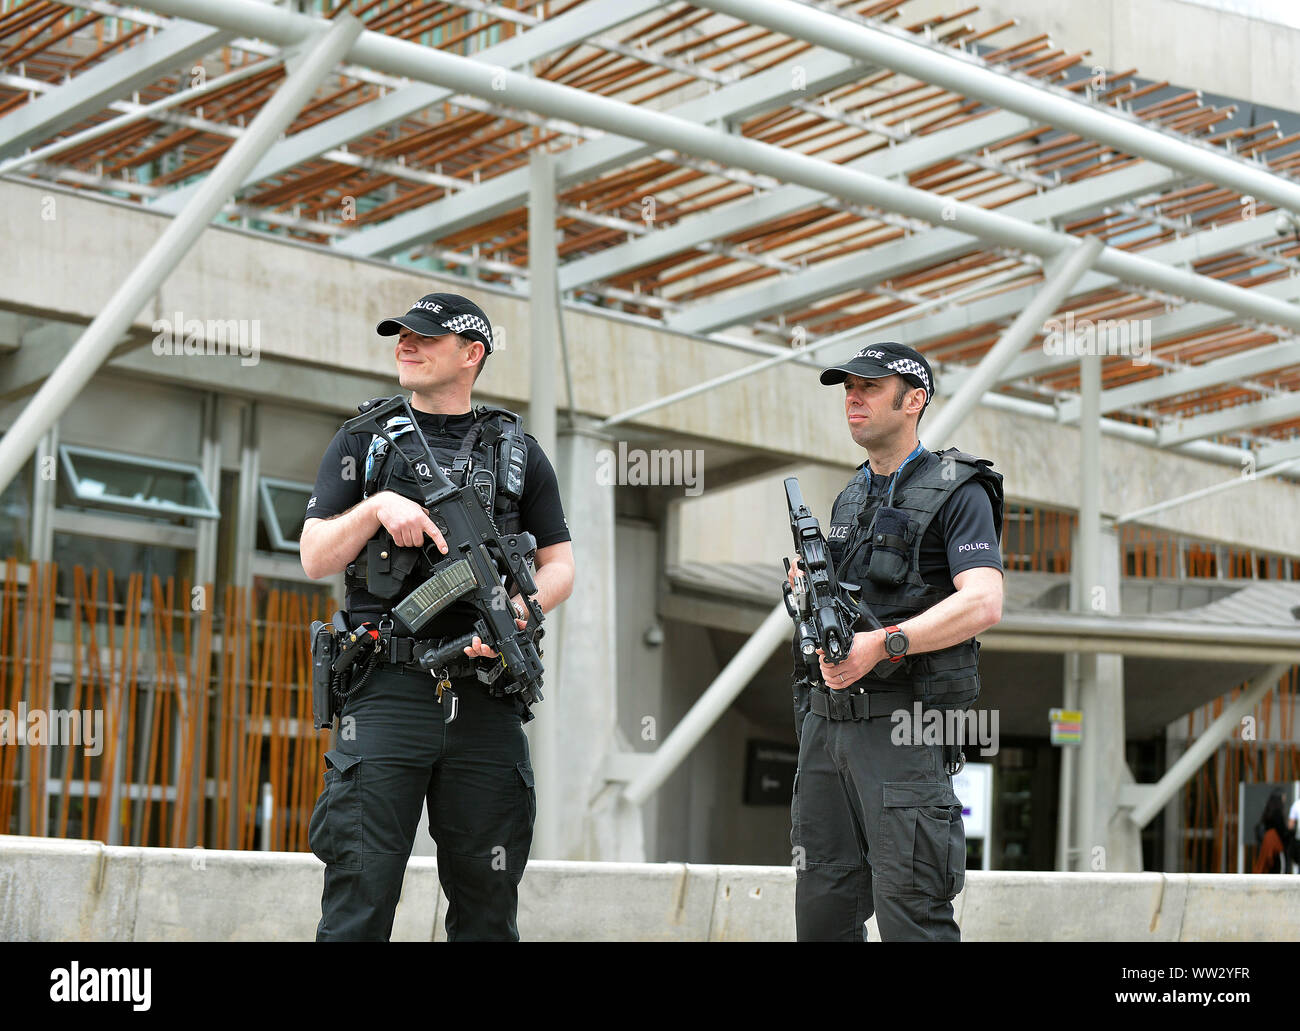 JON SAVAGE PHOTOGRAPHIE 24ÈME MAI 2017 policiers armés patrouillent le parlement écossais à Édimbourg, la sécurité est accrue dans la ville. Banque D'Images